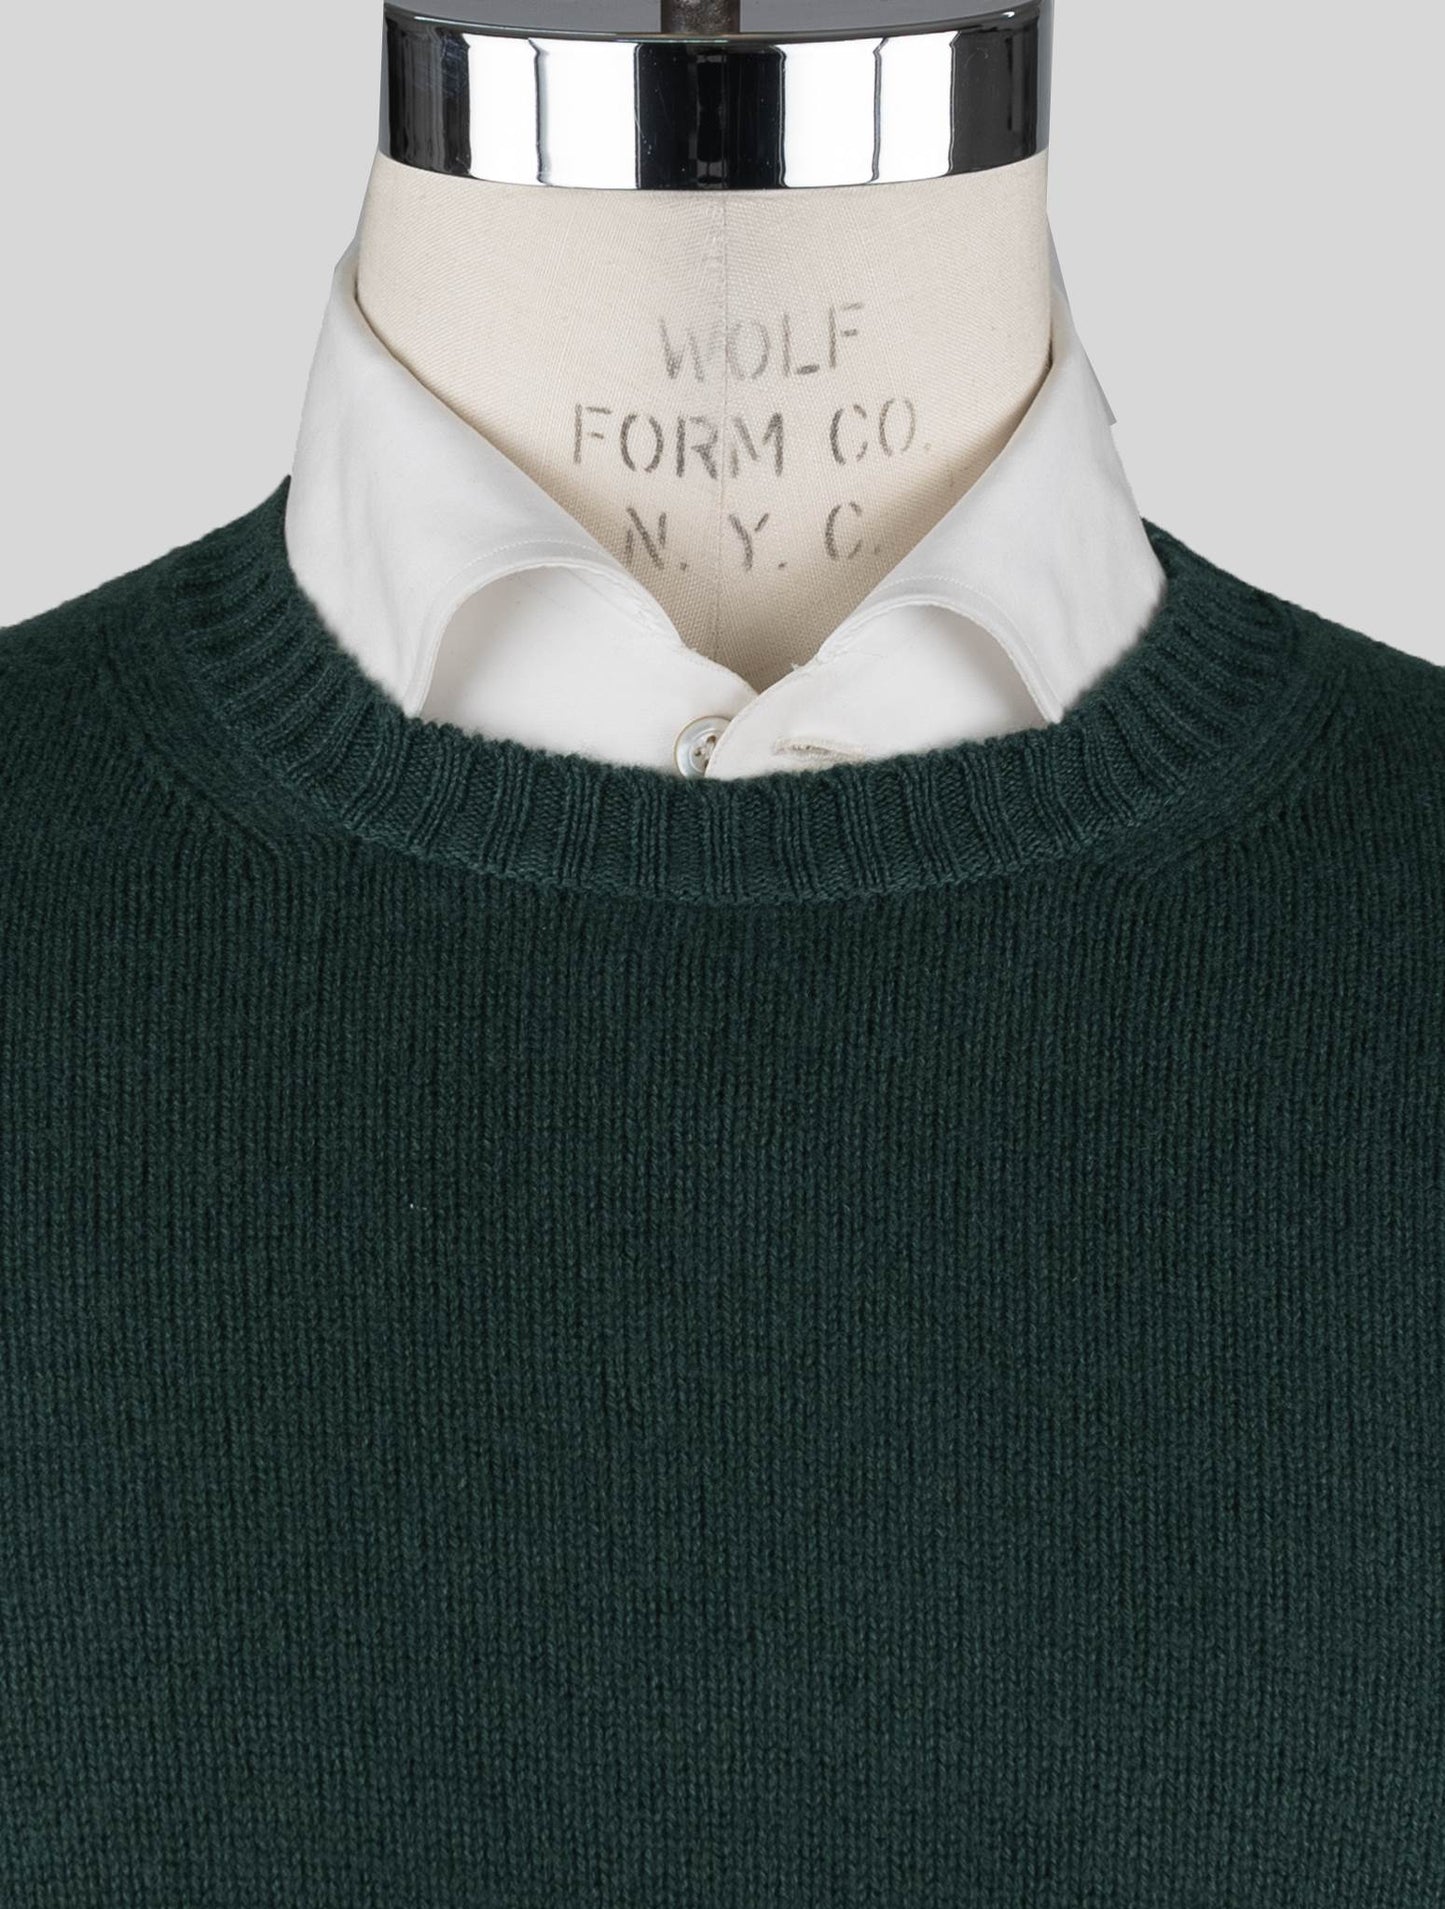 Malo Green Virgin Wool Sweater Crewneck